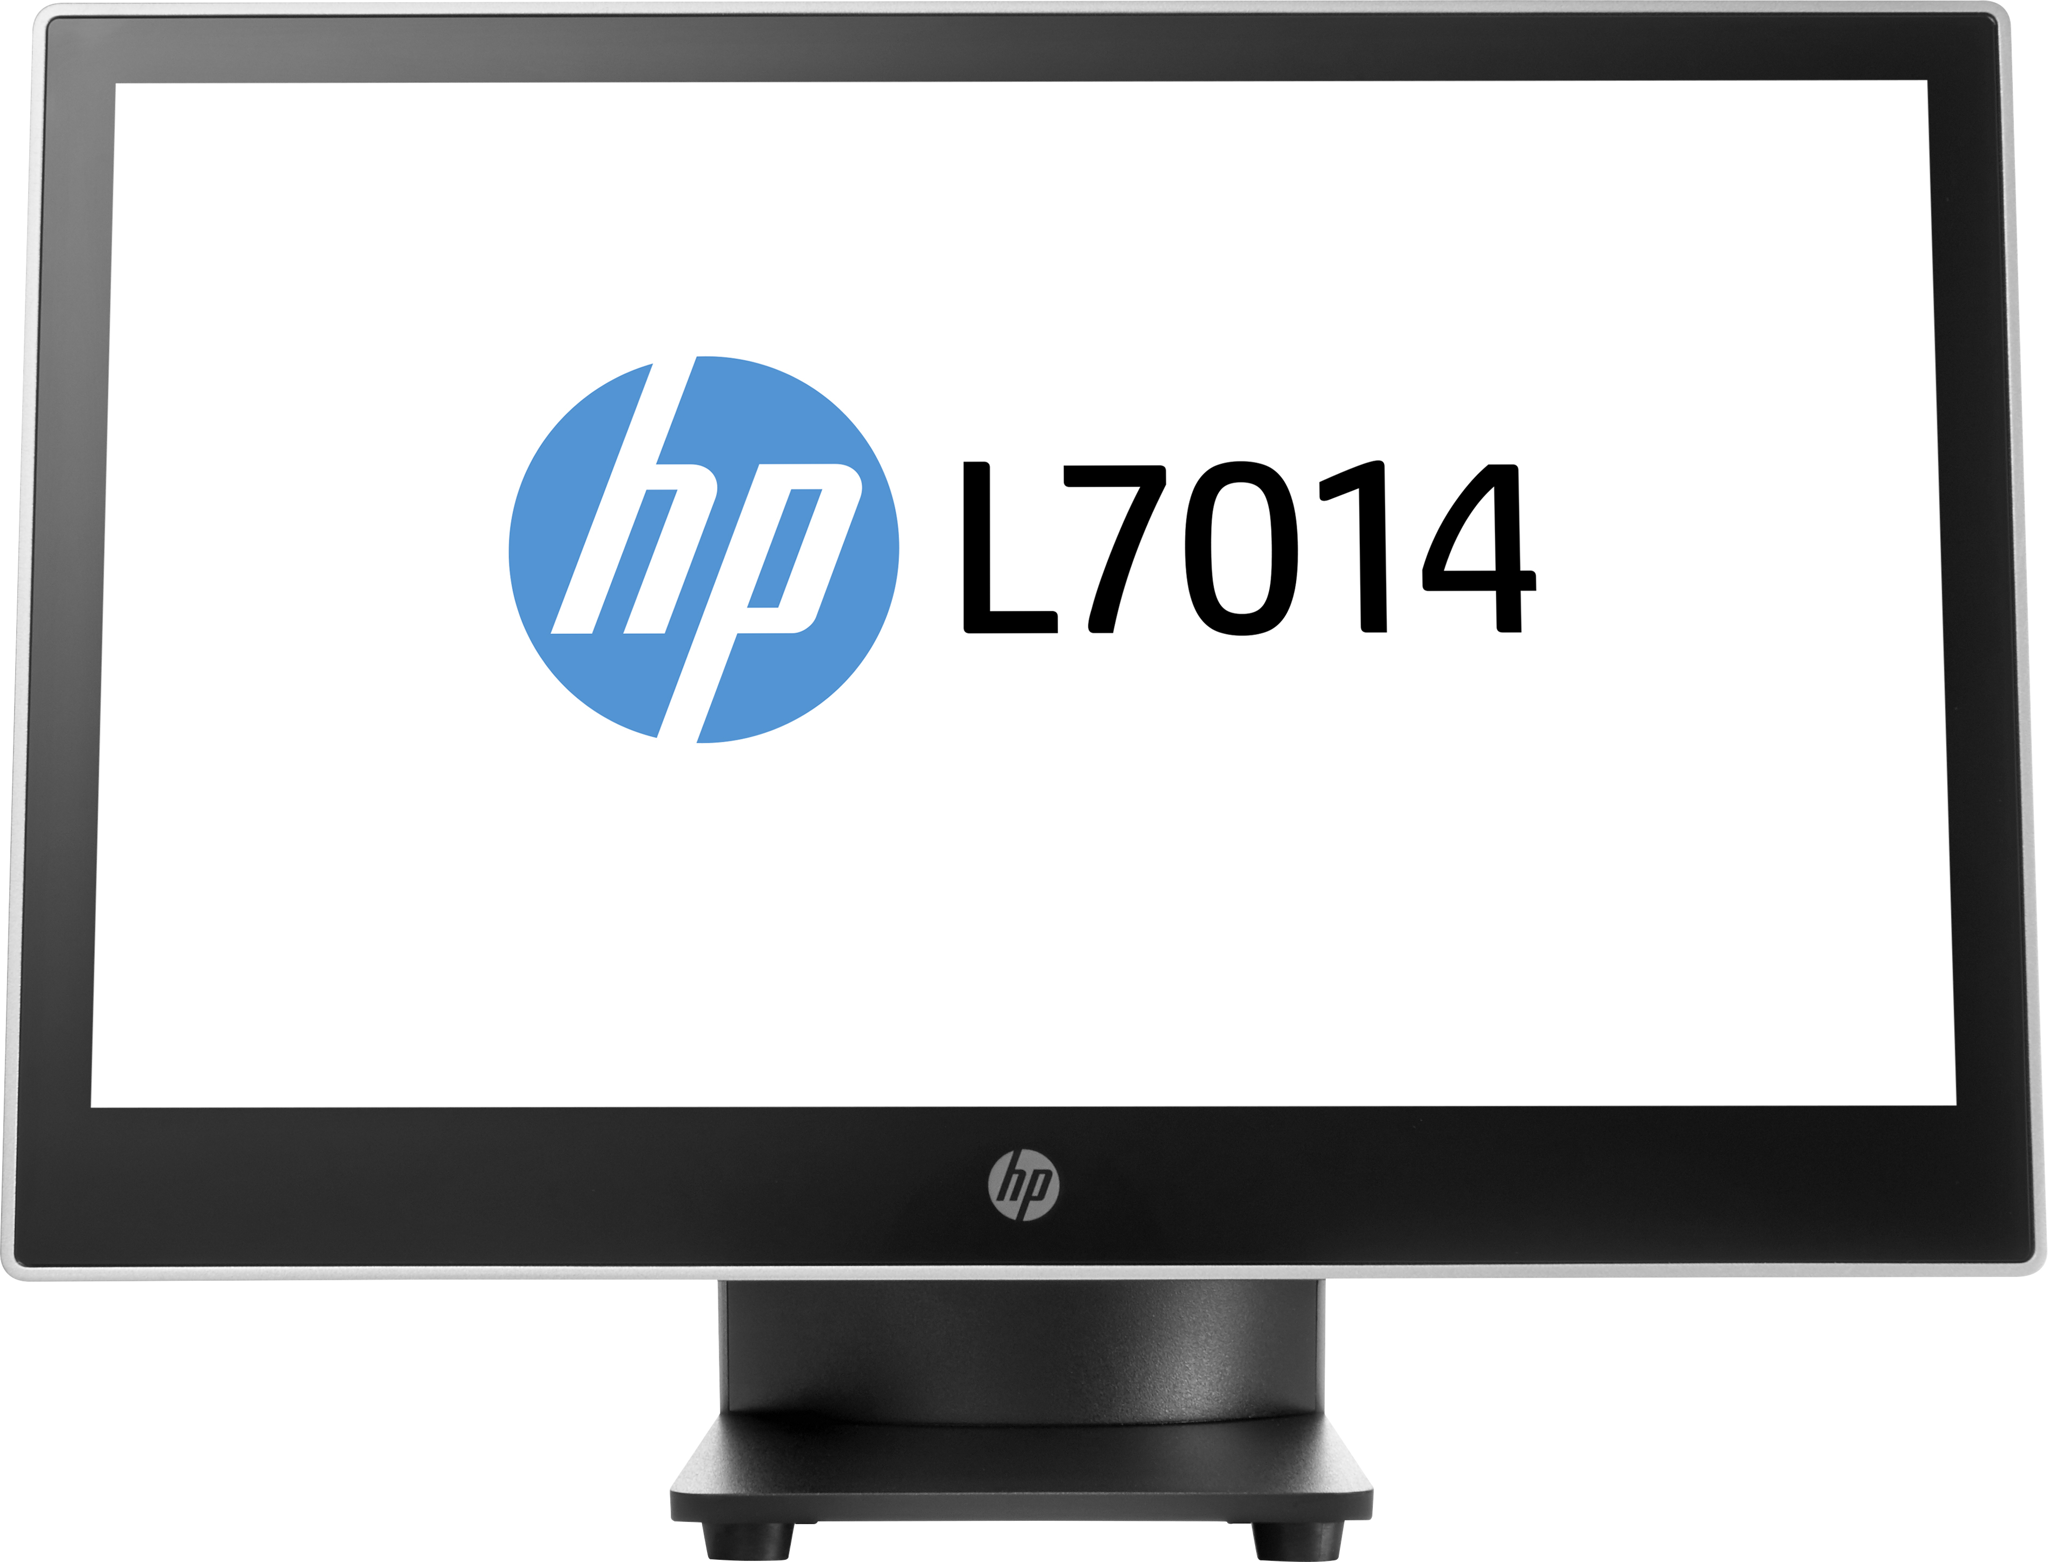 Bild von HP L7014 Einzelhandels-Monitor - 14 Zoll - 35,6 cm (14 Zoll) - Schwarz - Silber - Business - 339,8 mm - 41,5 mm - 218 mm